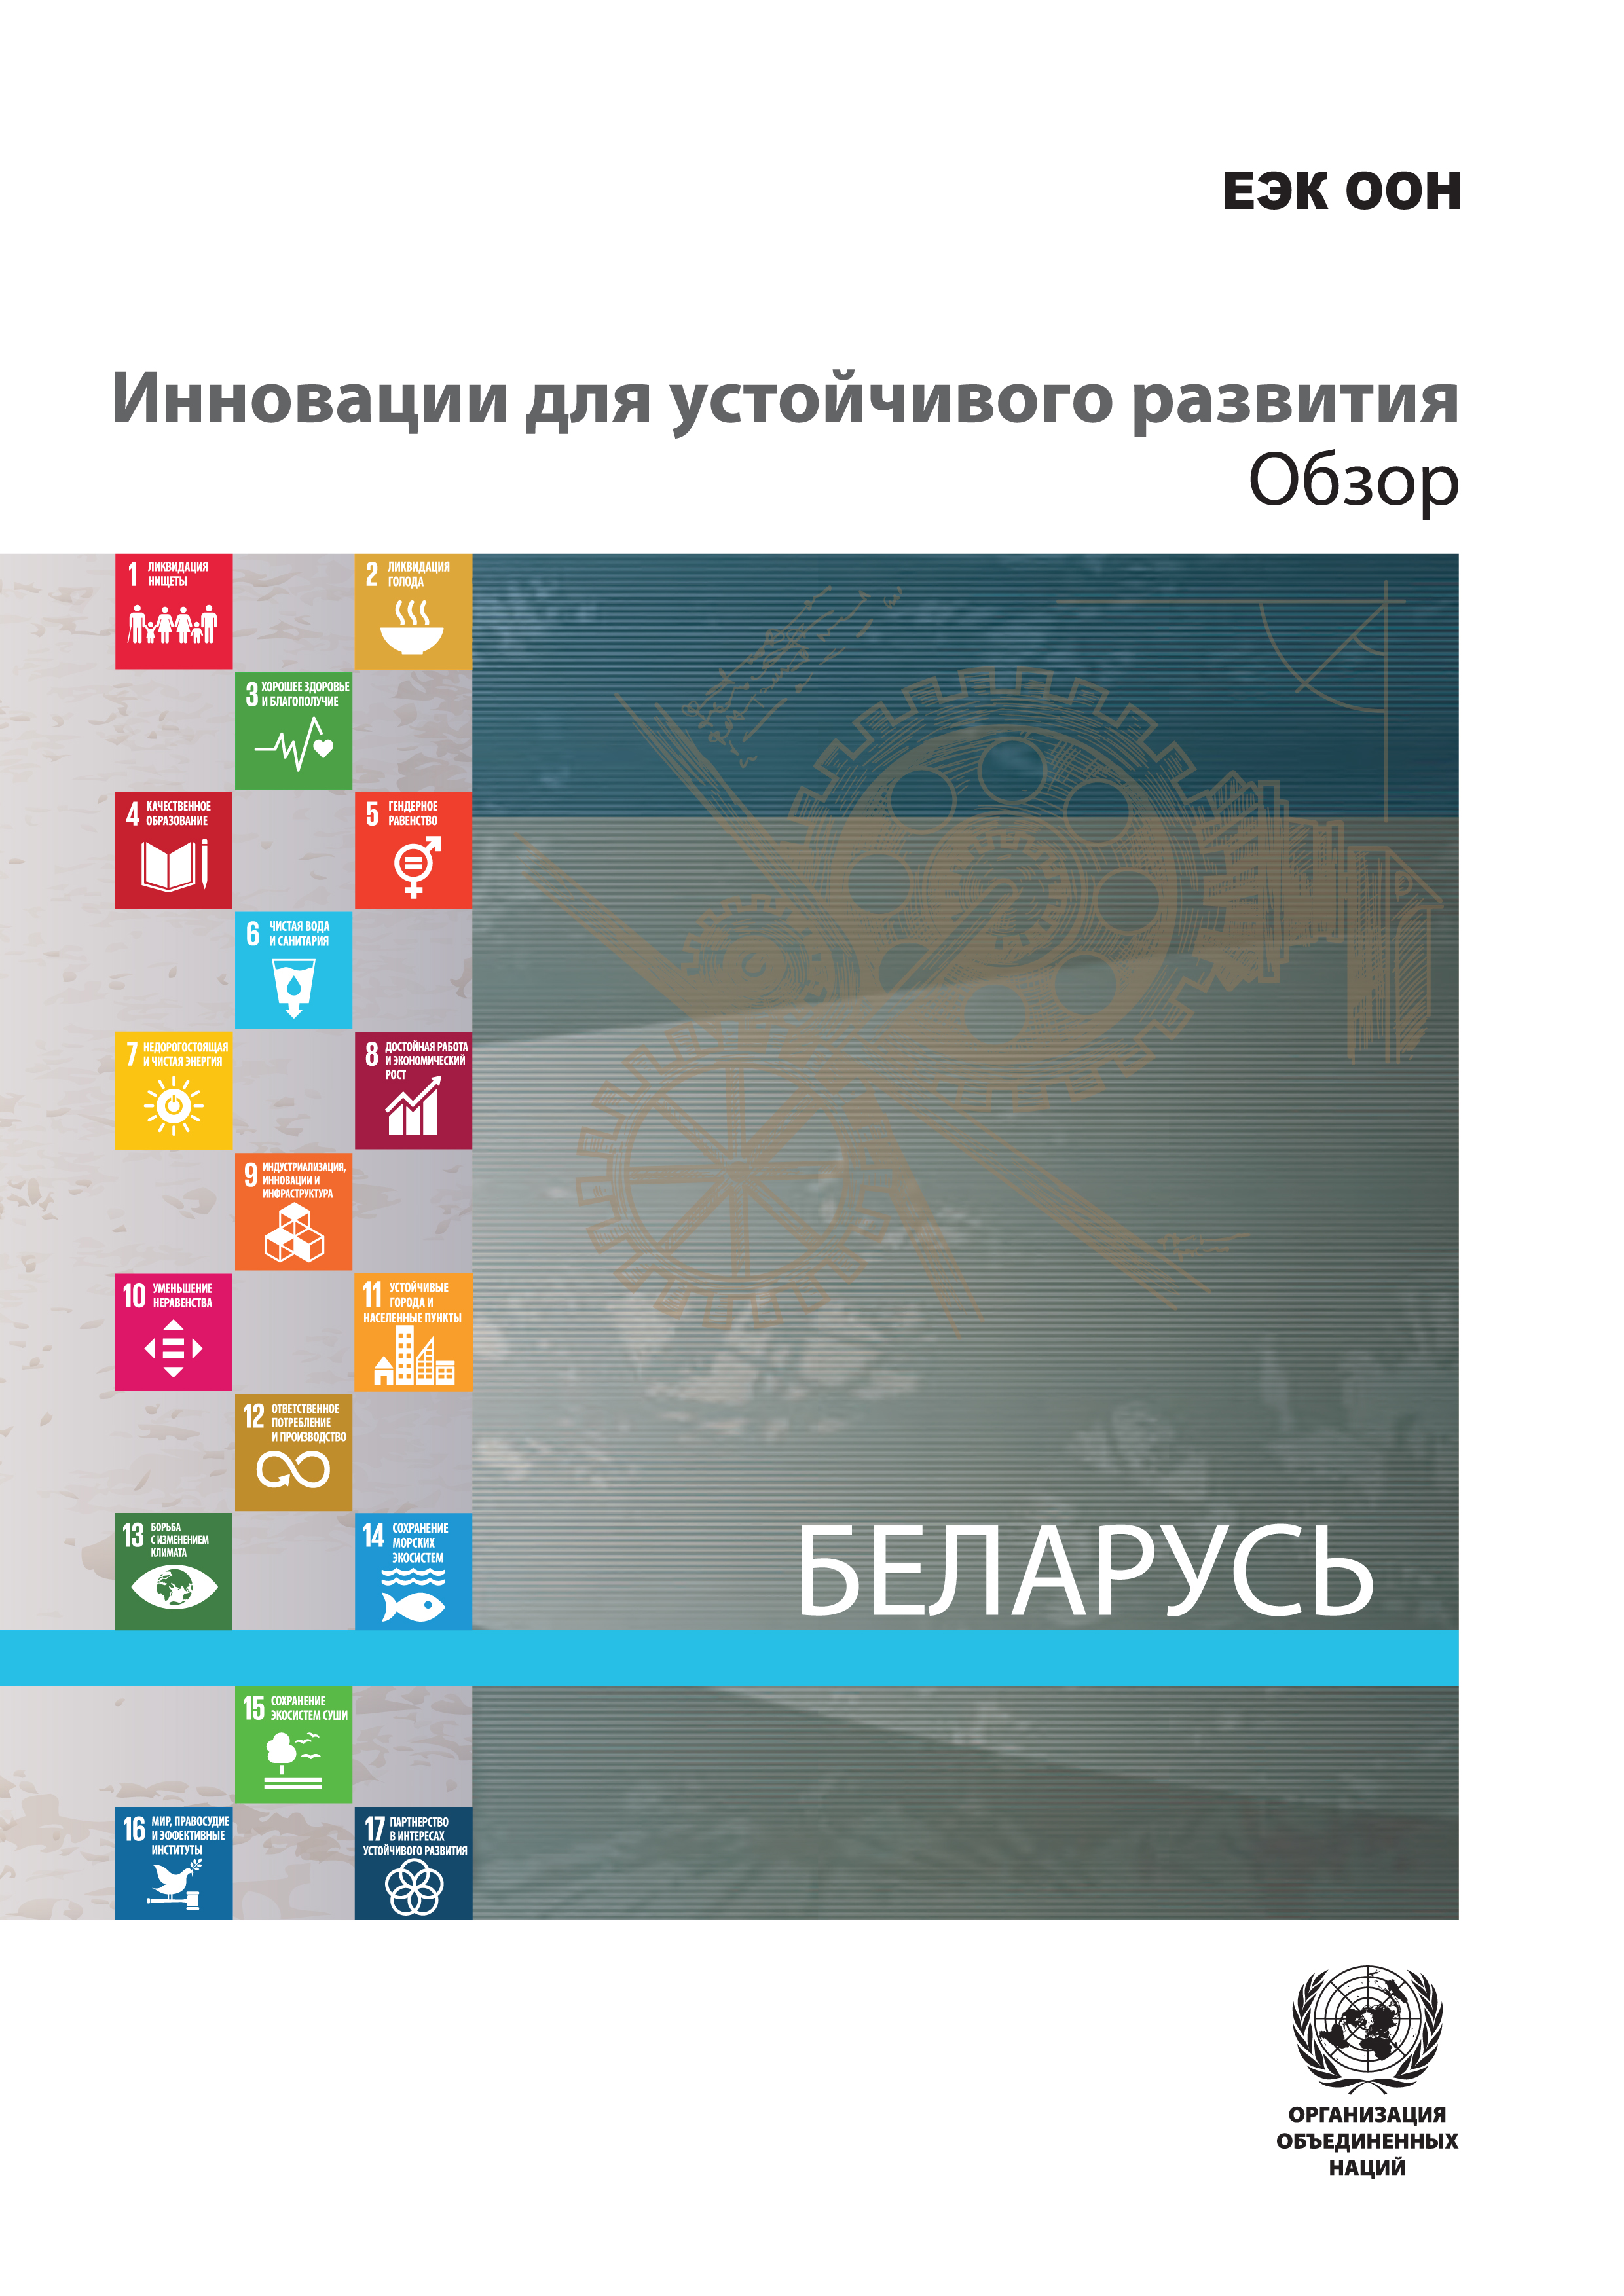 image of Инновации для устойчивого развития: обзор по республике беларусь